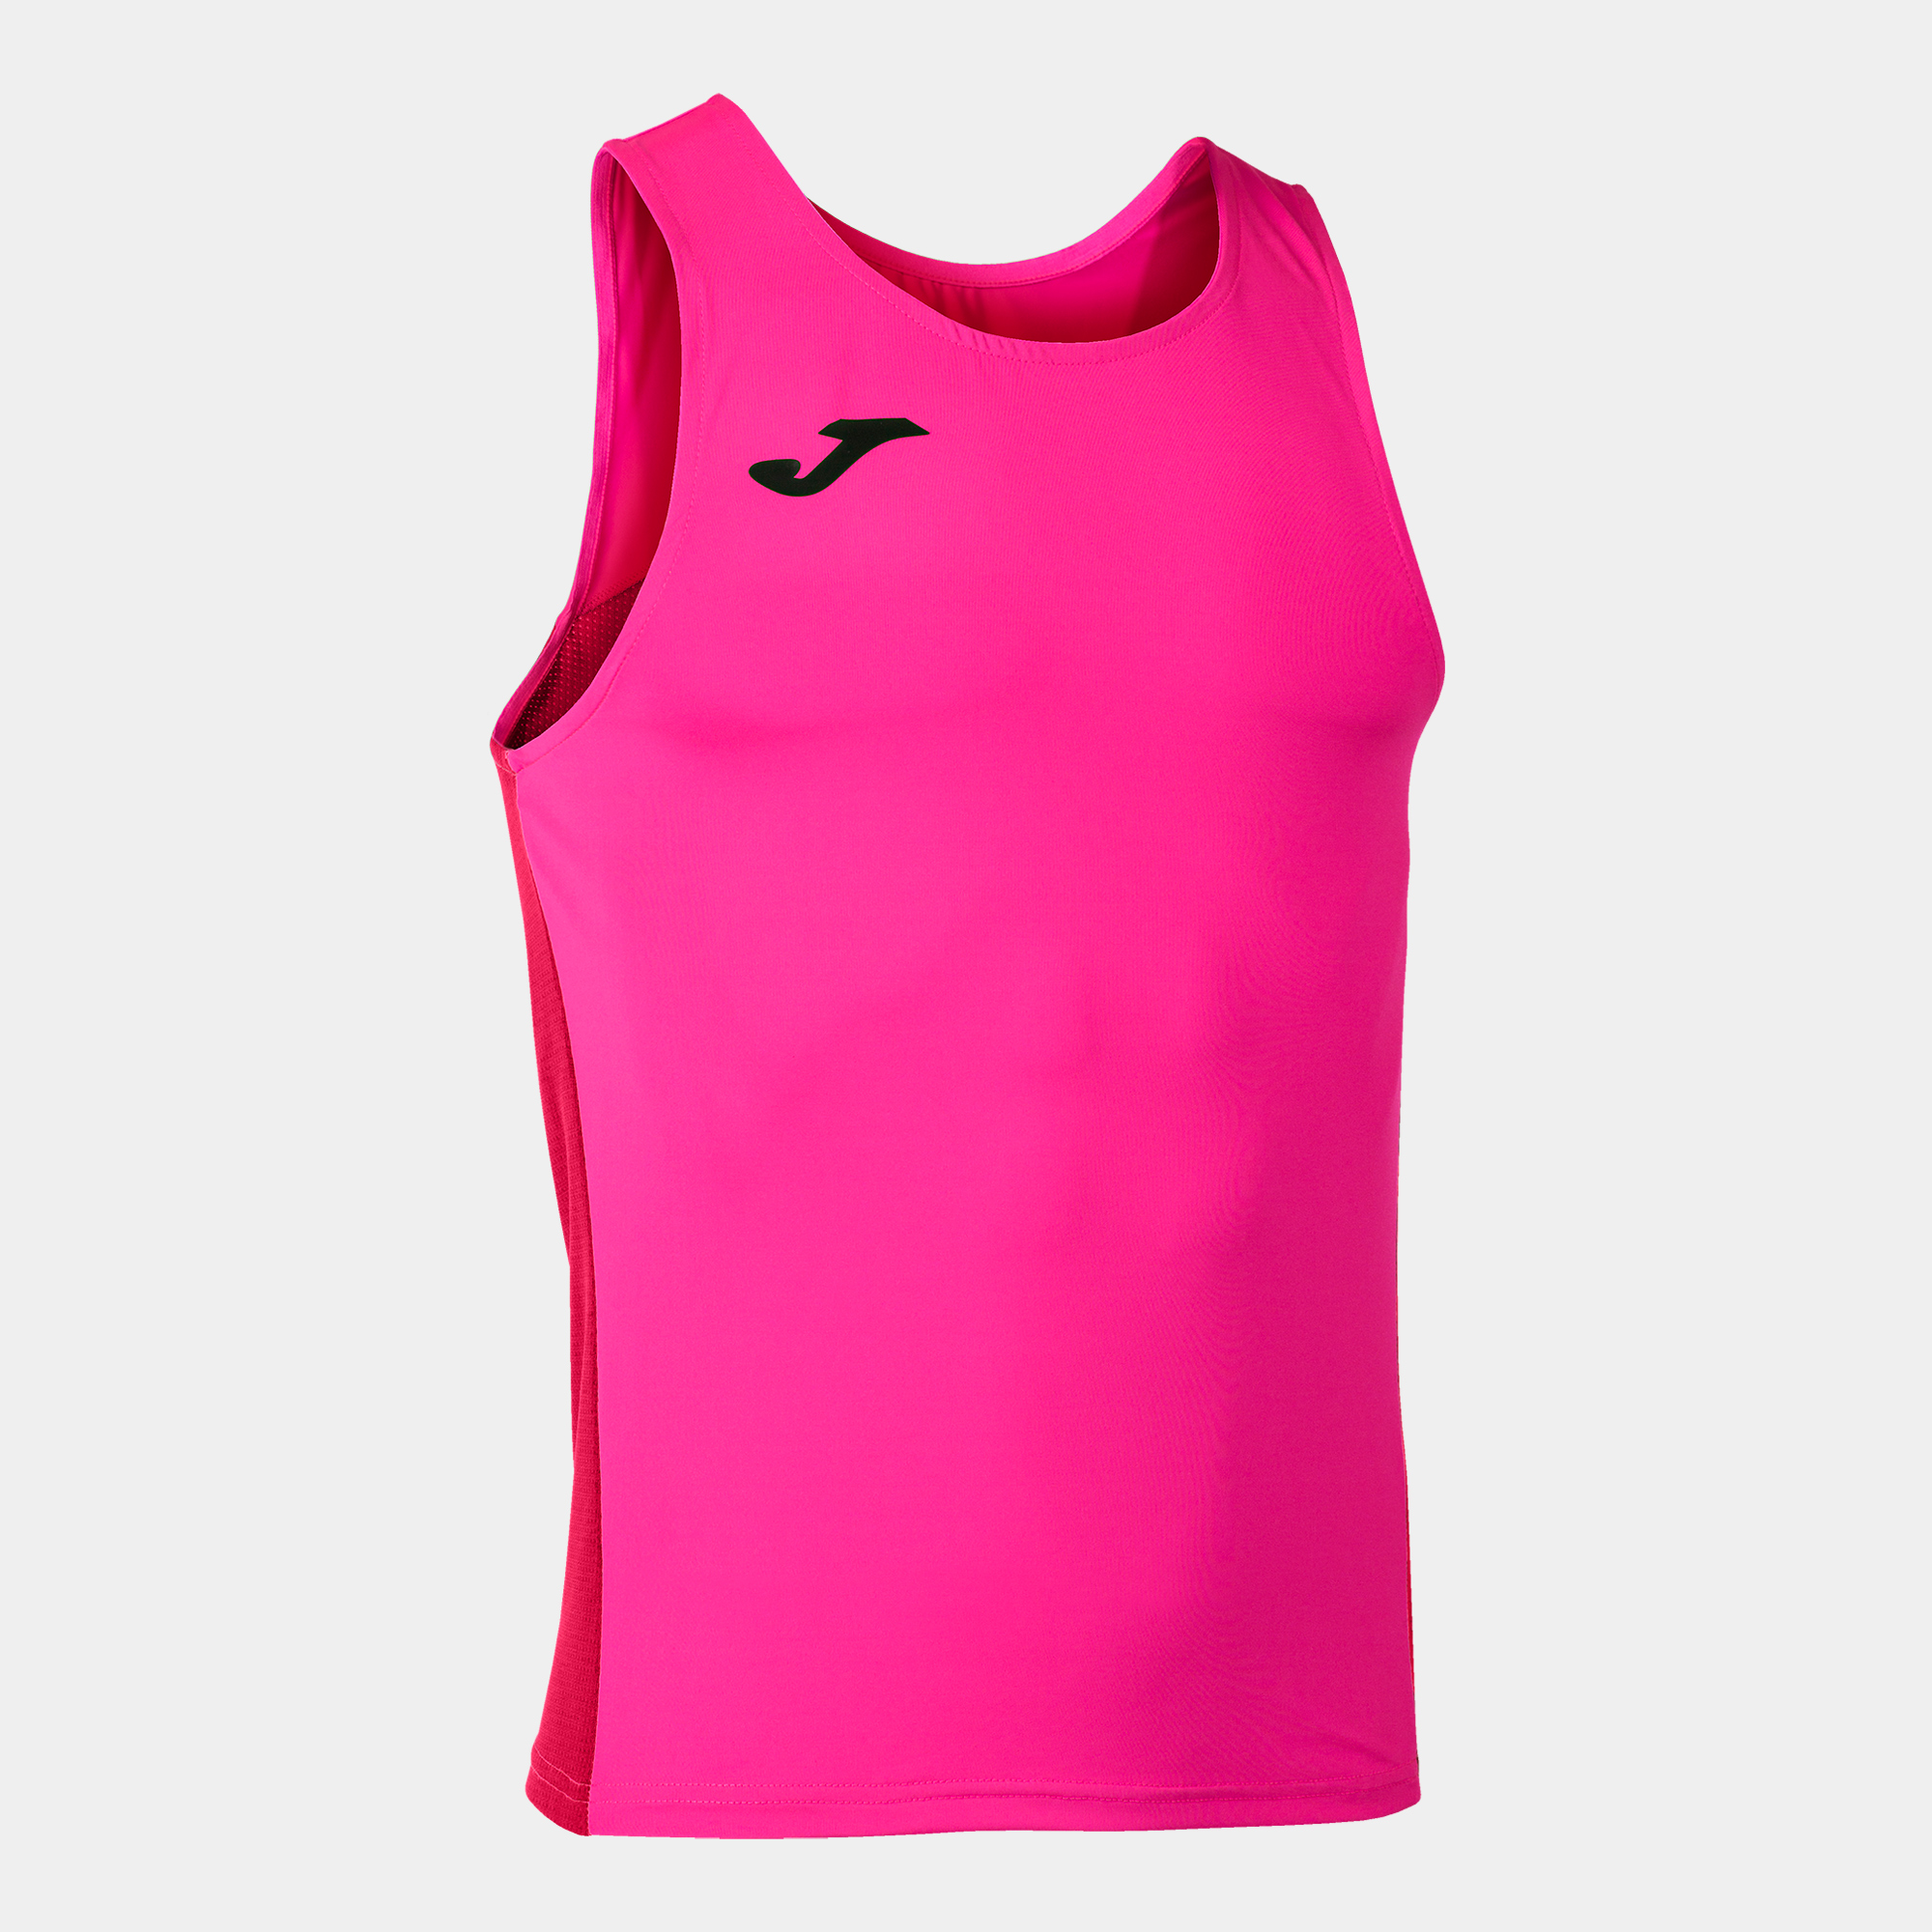 Camiseta Tirantes Joma R-winner Rosa Flúor - rosa-fluor - 